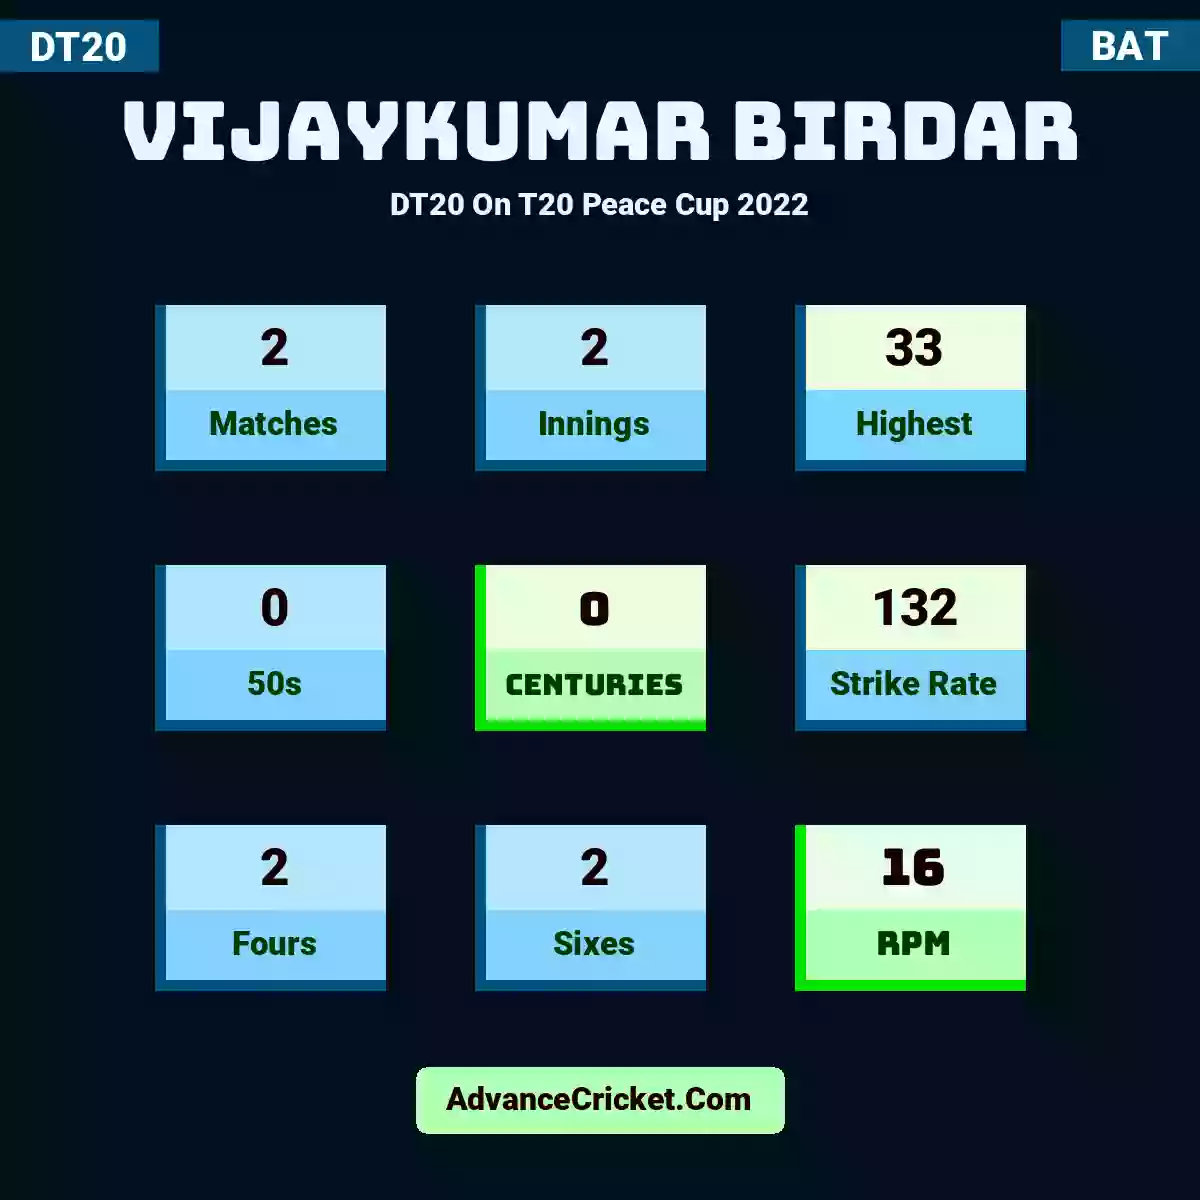 Vijaykumar Birdar DT20  On T20 Peace Cup 2022, Vijaykumar Birdar played 2 matches, scored 33 runs as highest, 0 half-centuries, and 0 centuries, with a strike rate of 132. V.Birdar hit 2 fours and 2 sixes, with an RPM of 16.